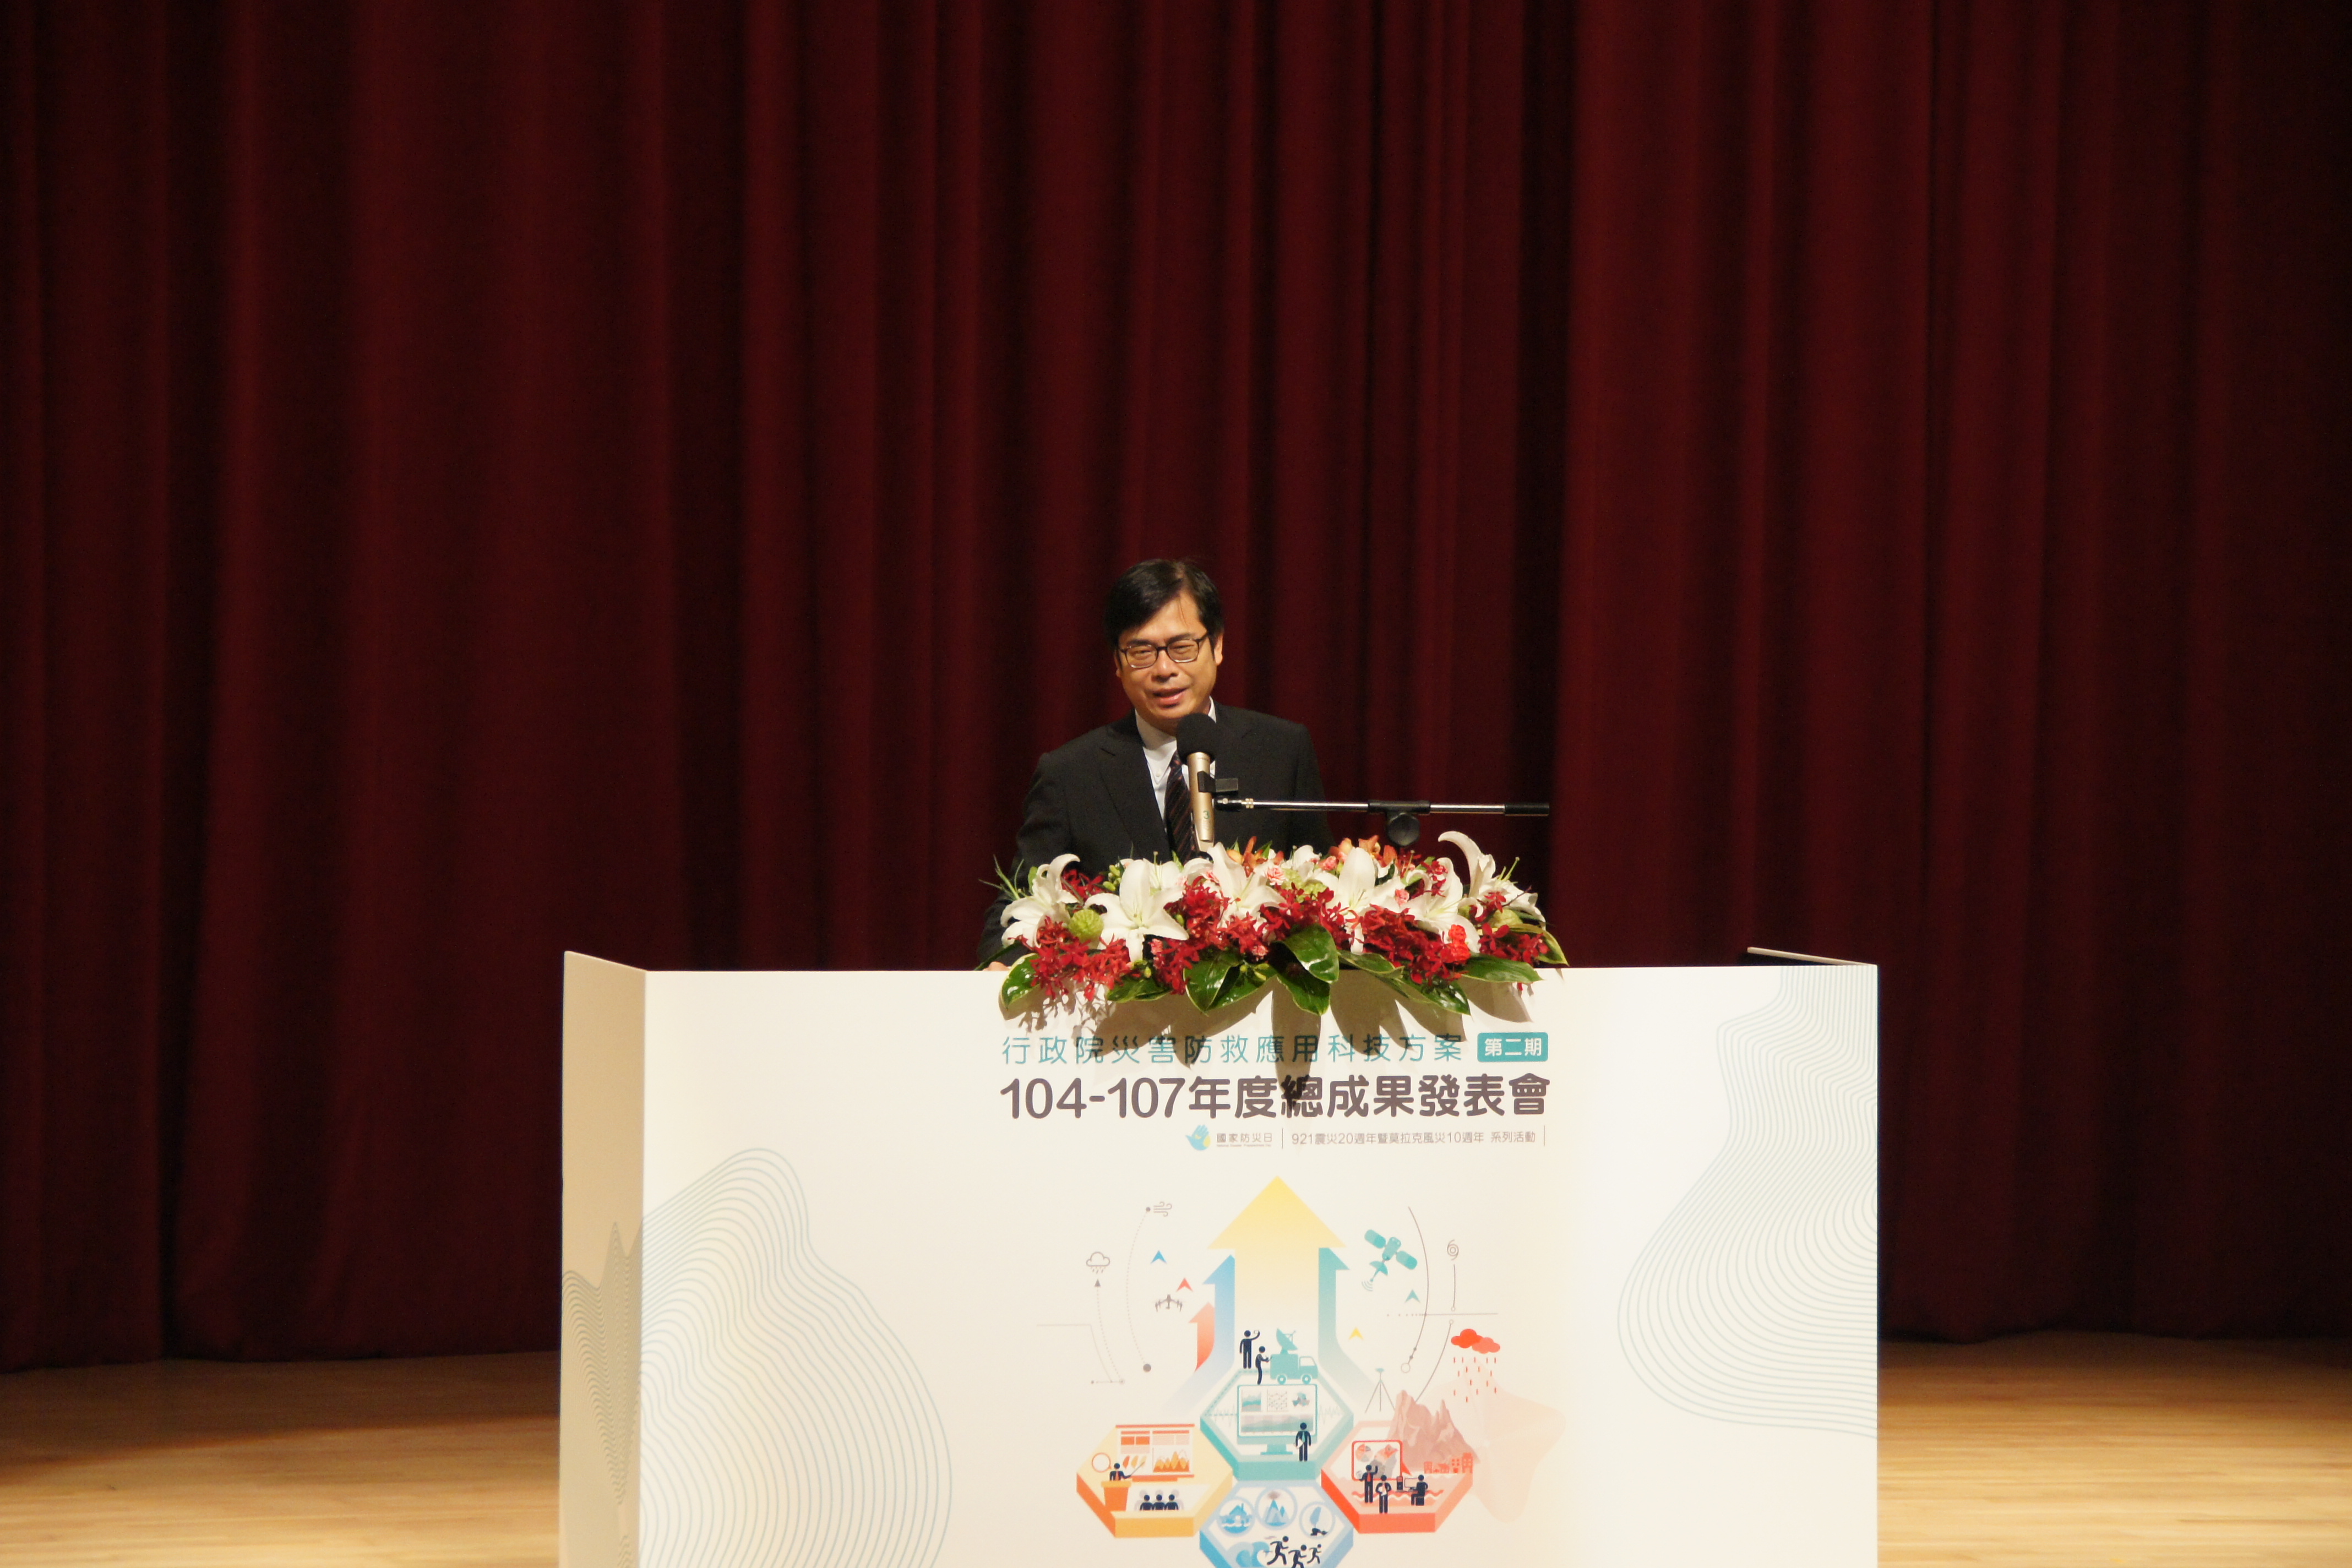 邀請行政院陳其邁副院長擔任開幕嘉賓並致詞勉勵